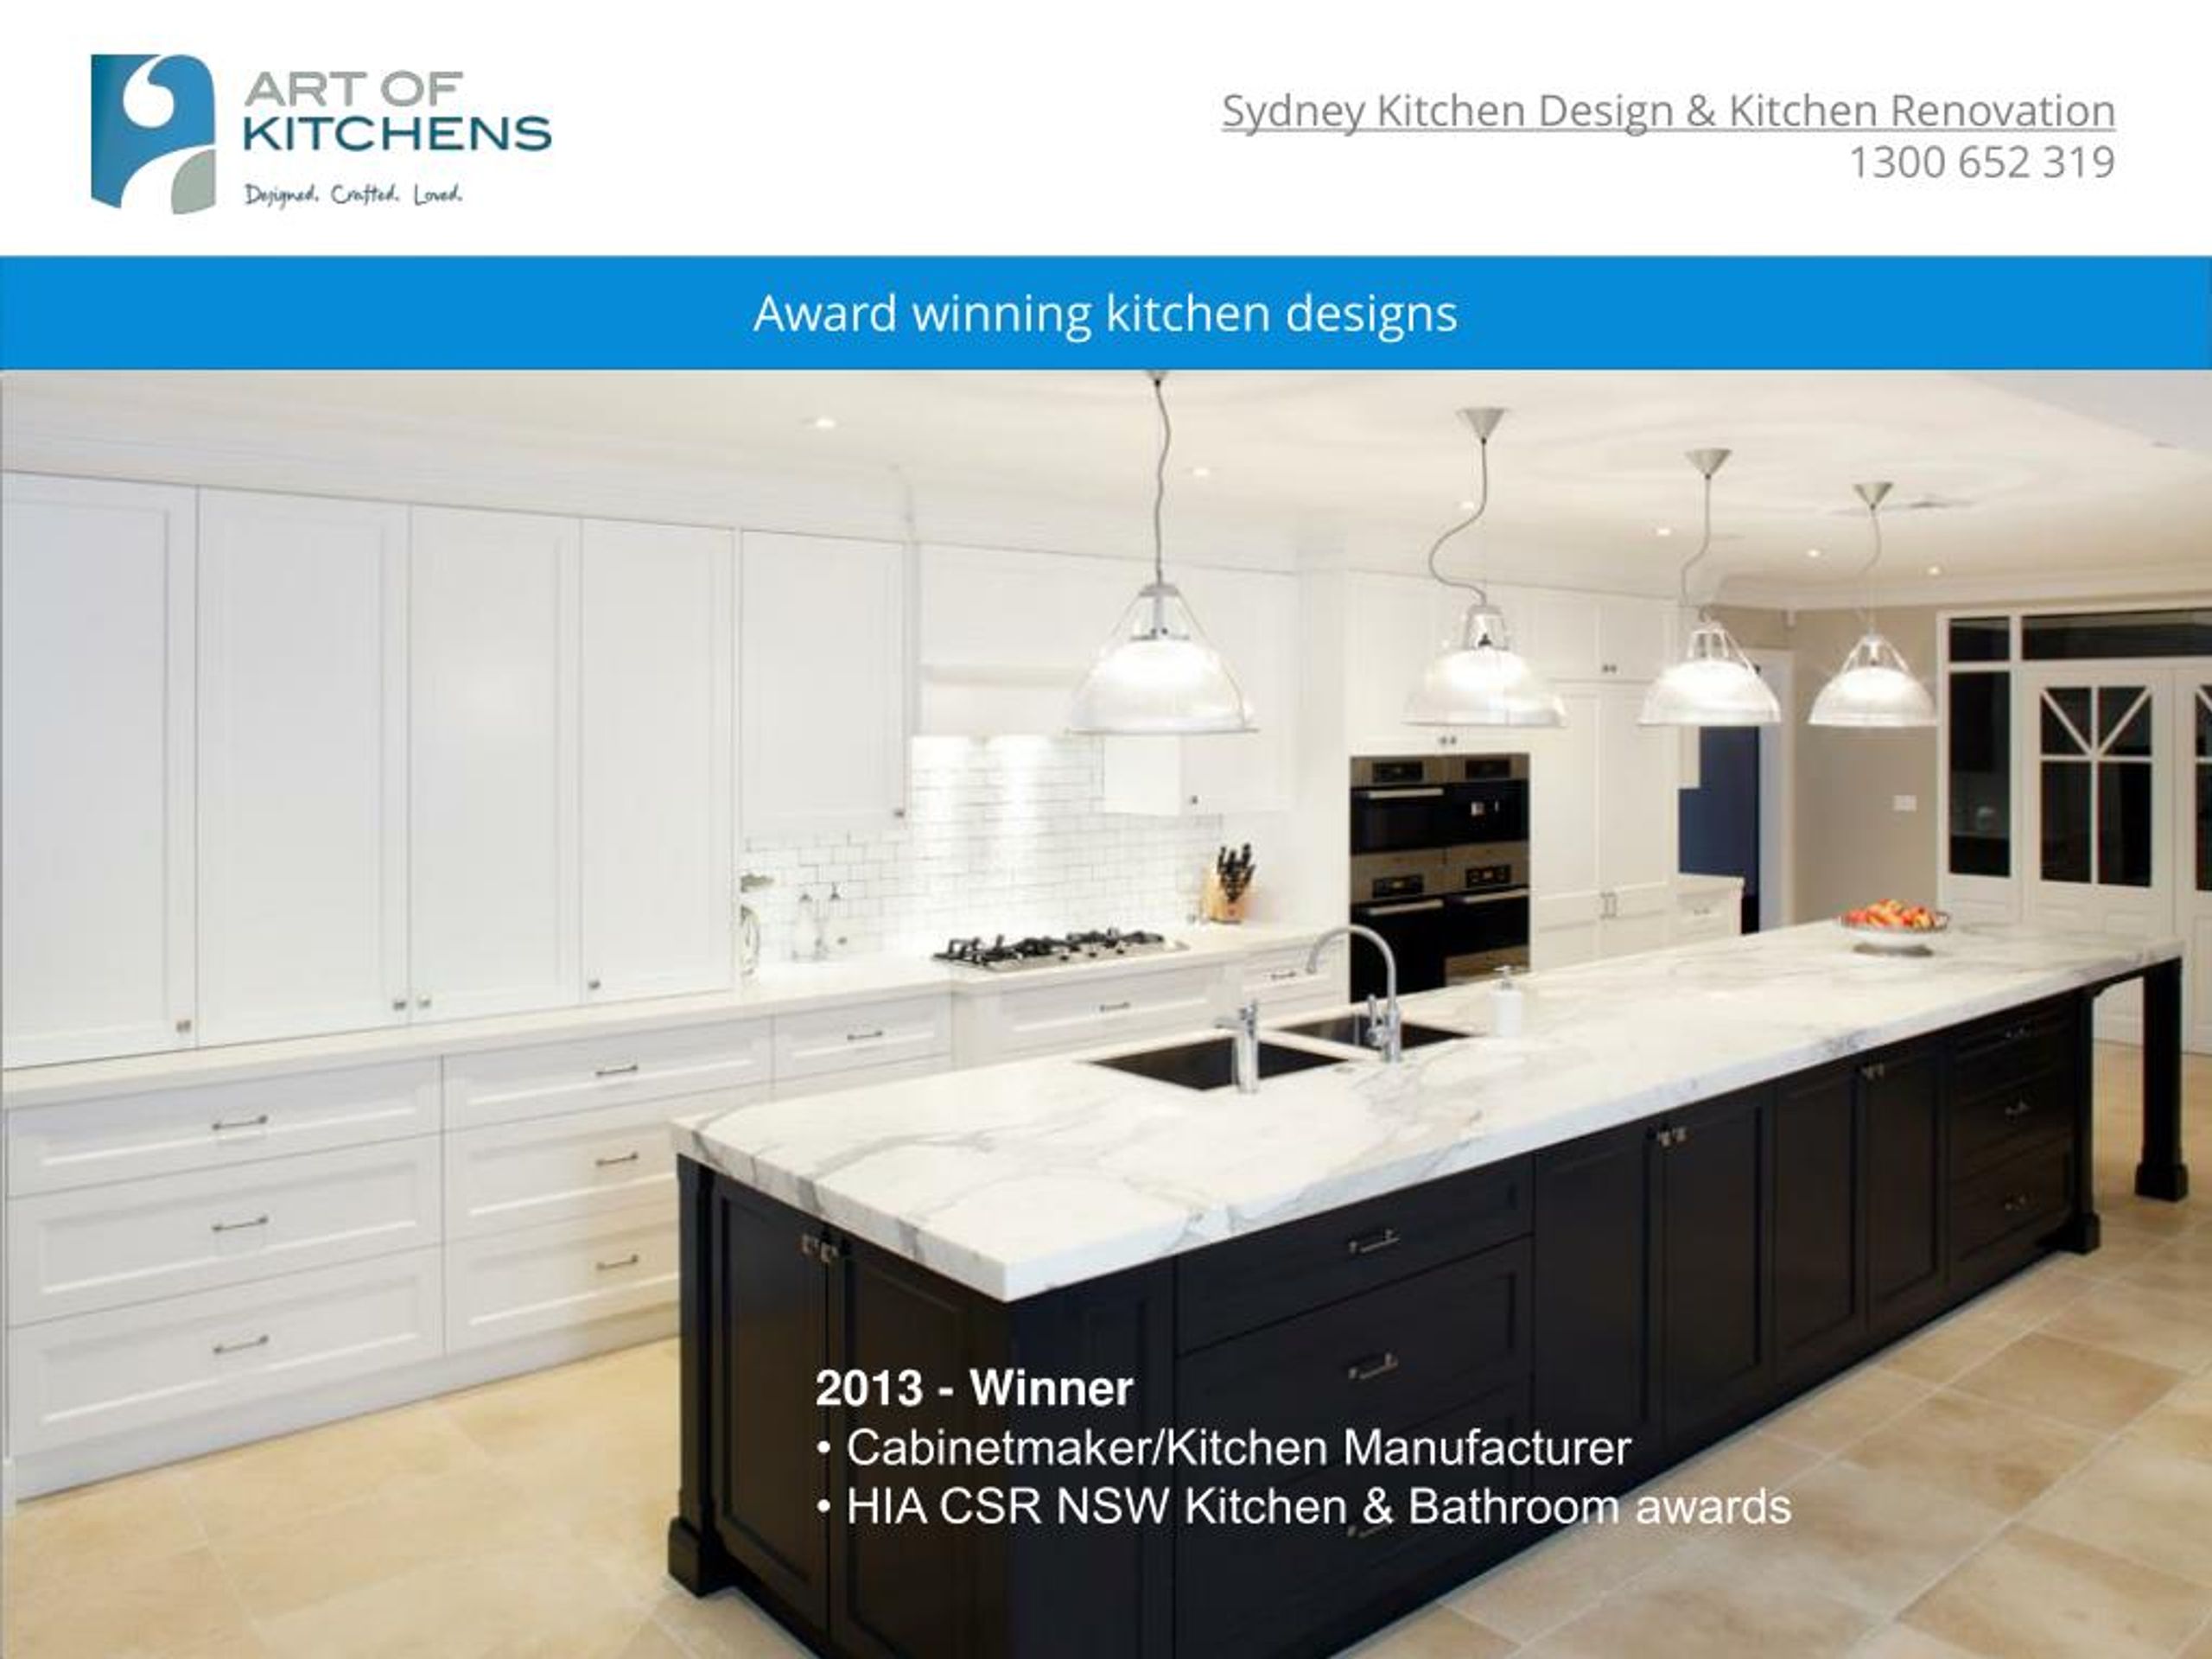 PPT Sydney Kitchen Design Kitchen Renovation PowerPoint Presentation ID7131567